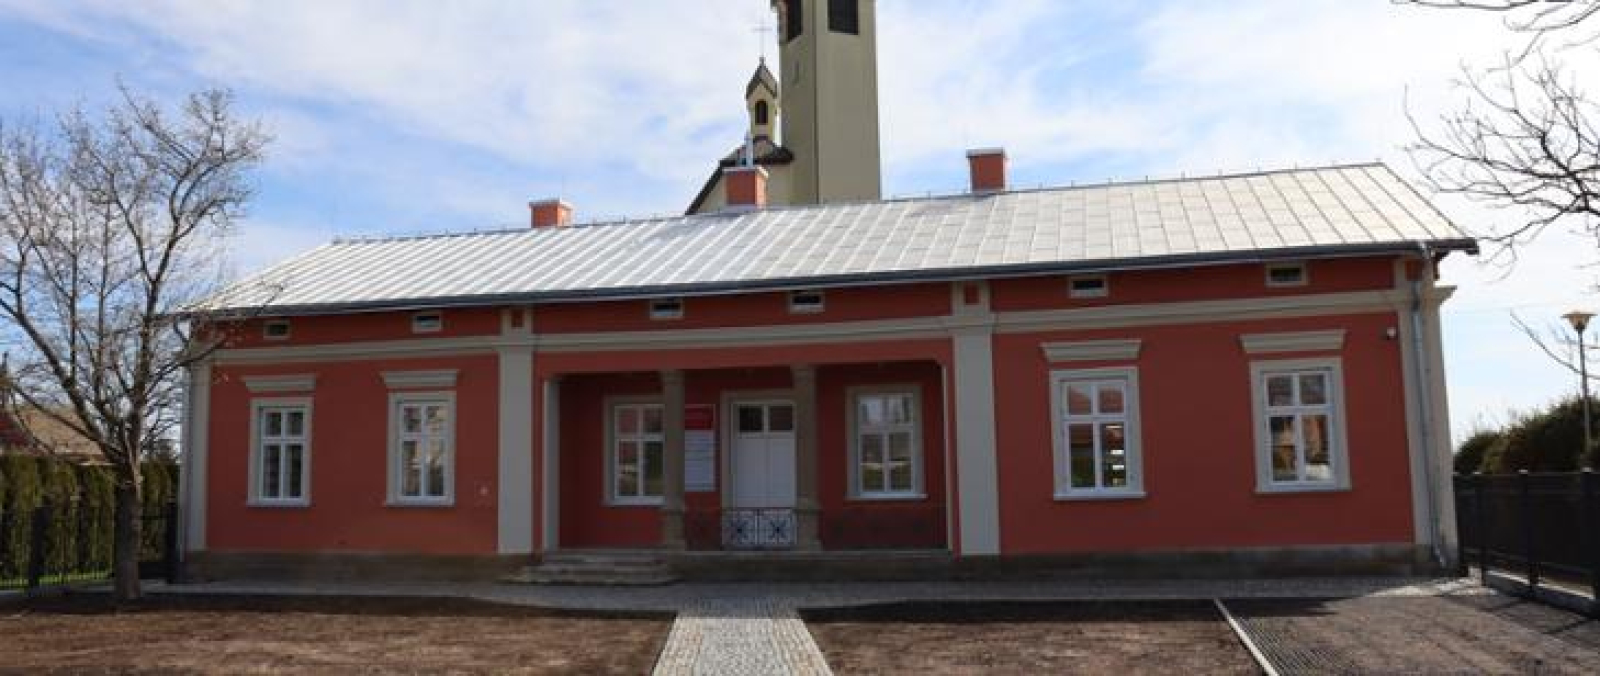 Nowa siedziba gminnej biblioteki w Szebniach